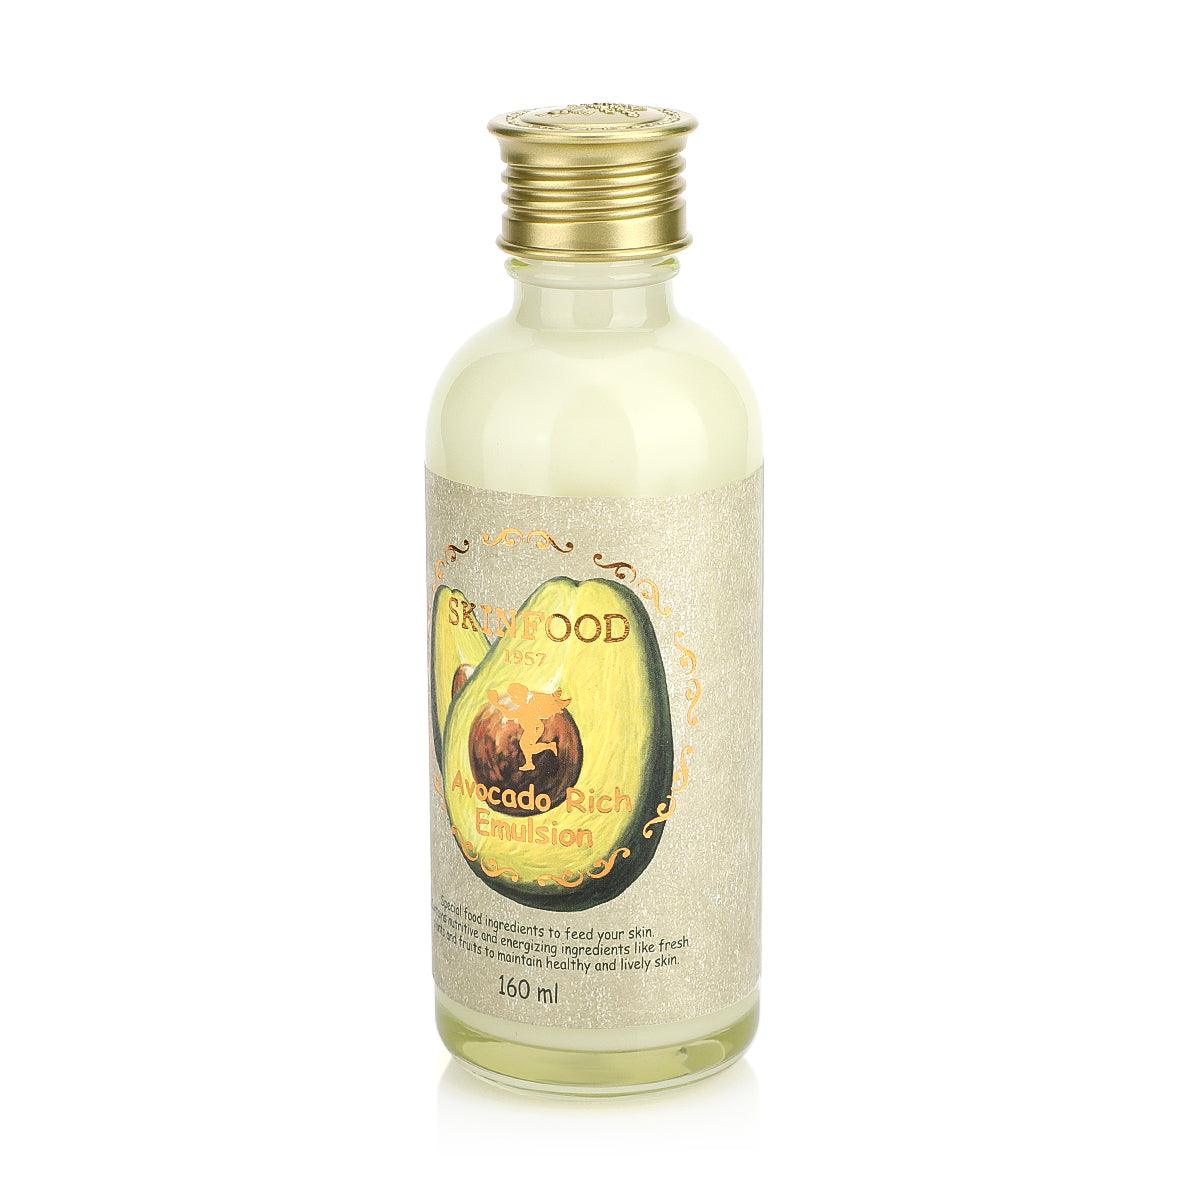 Avocado Rich Emulsion - 160 ml - K-Beauty Arabia